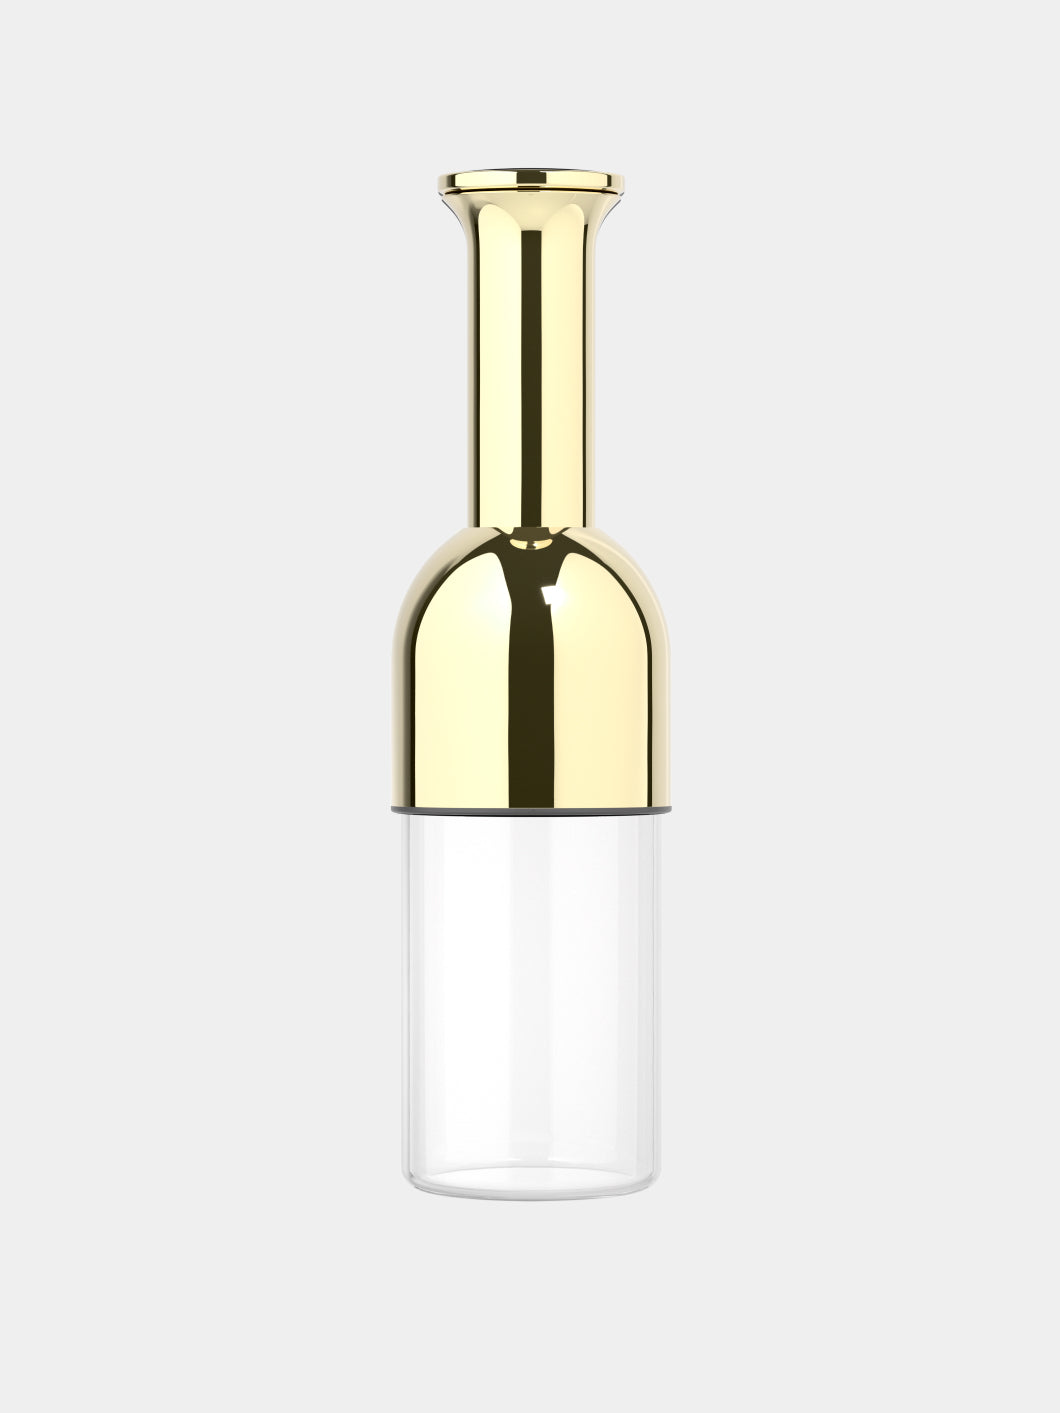 eto wine decanter in Gold: mirror finish